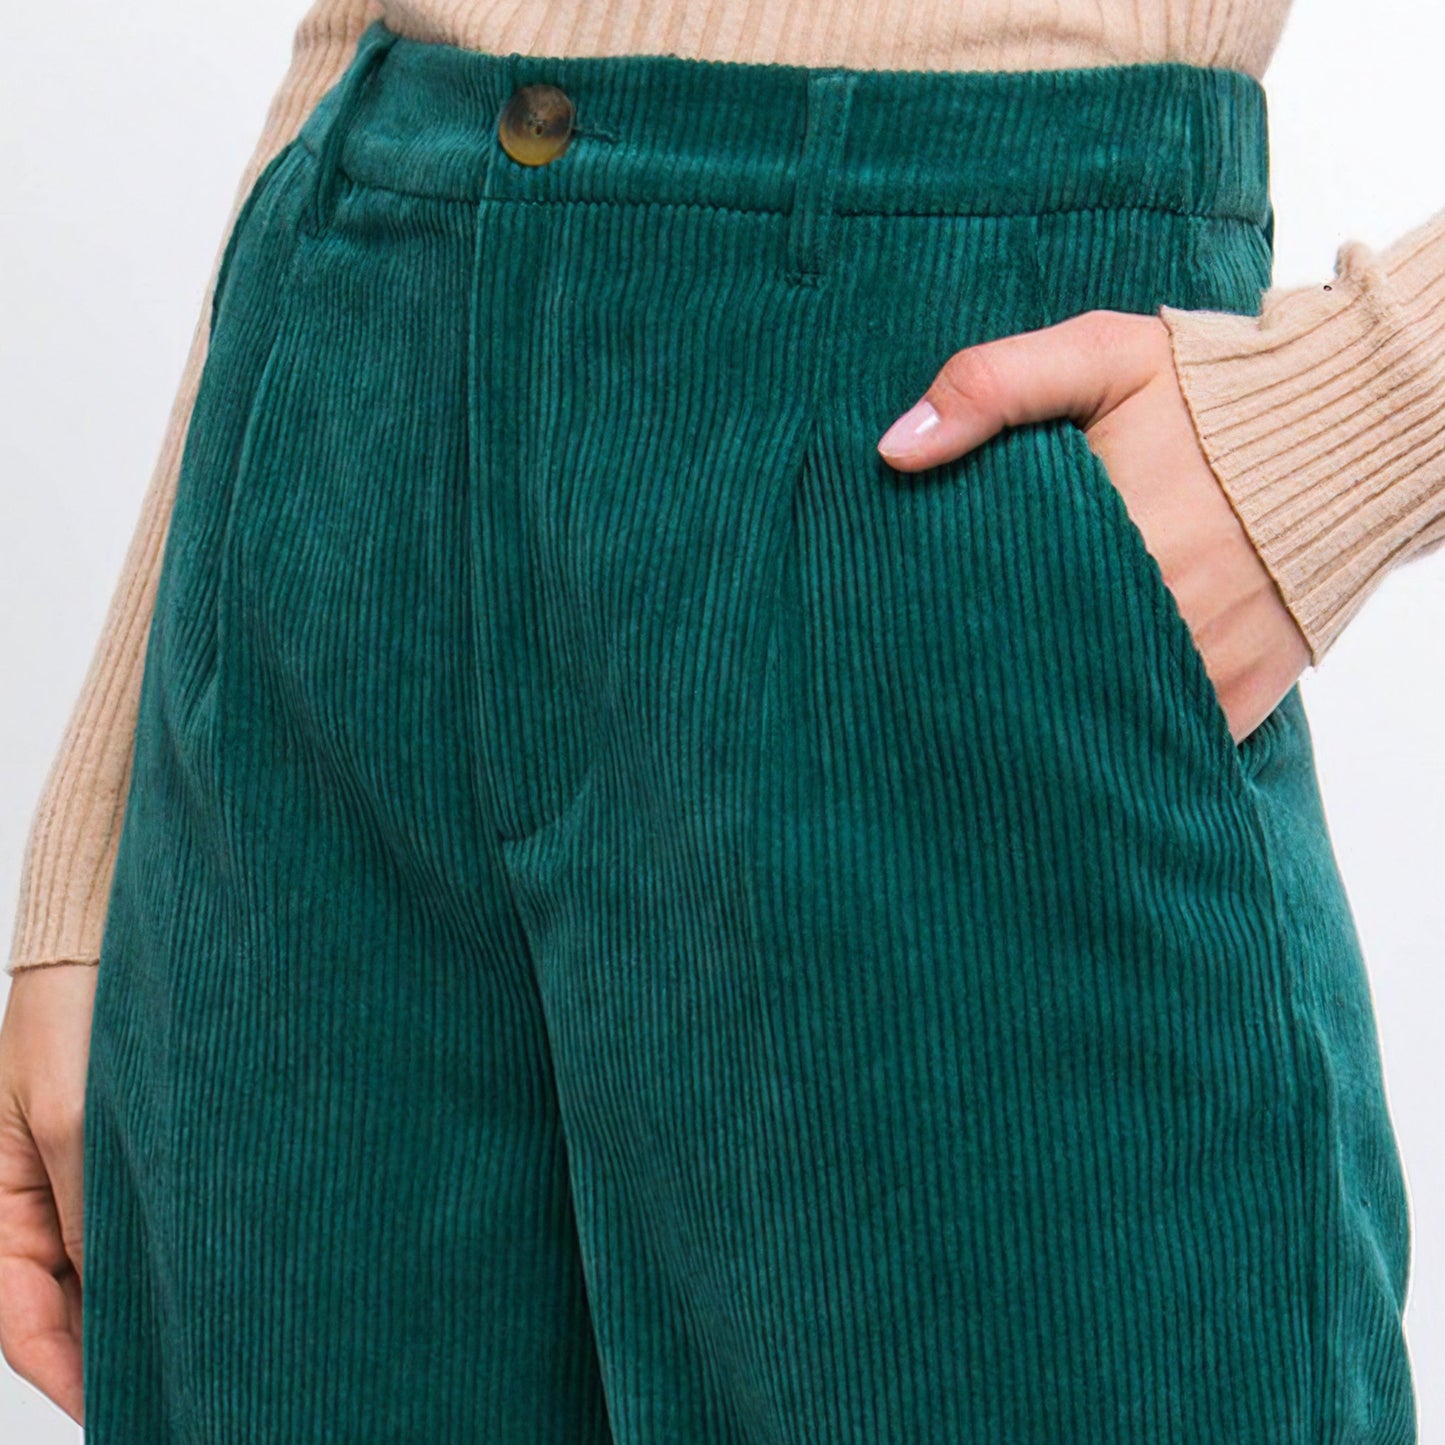 Corduroy Trouser Pants